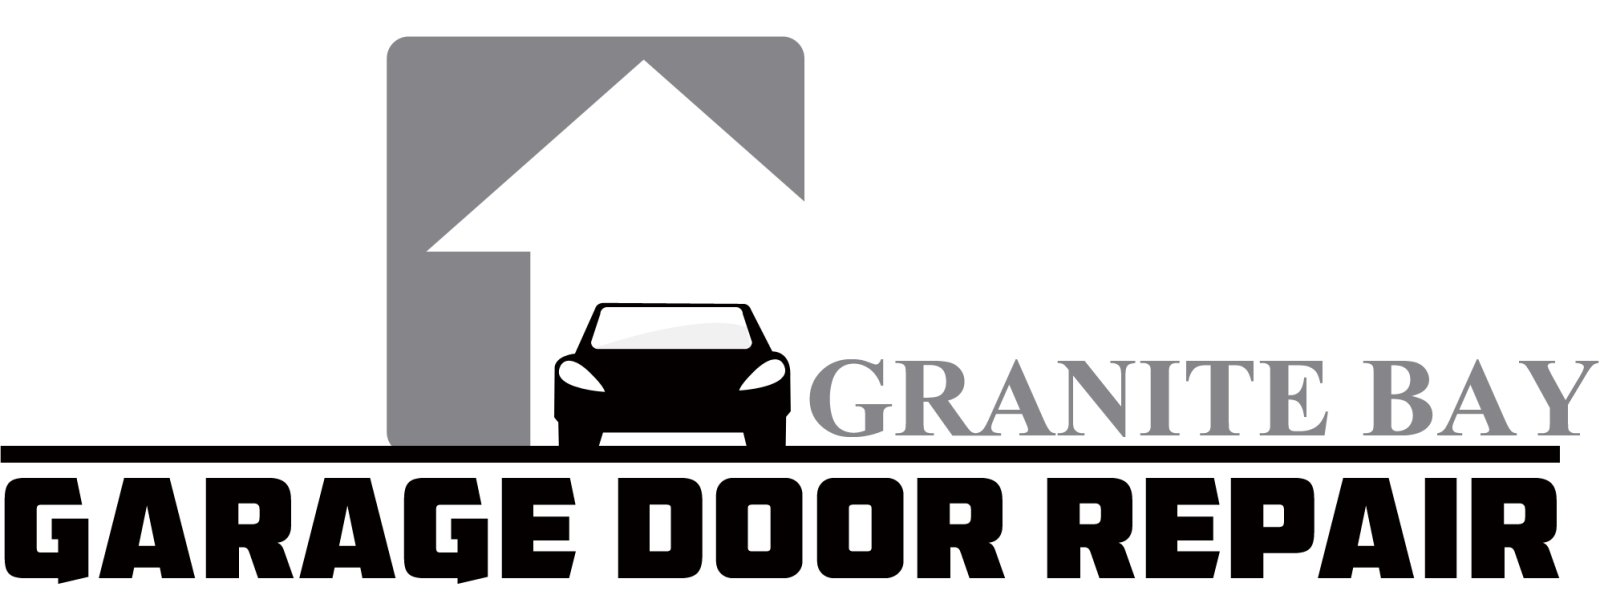 Garage Door Repair Granite Bay